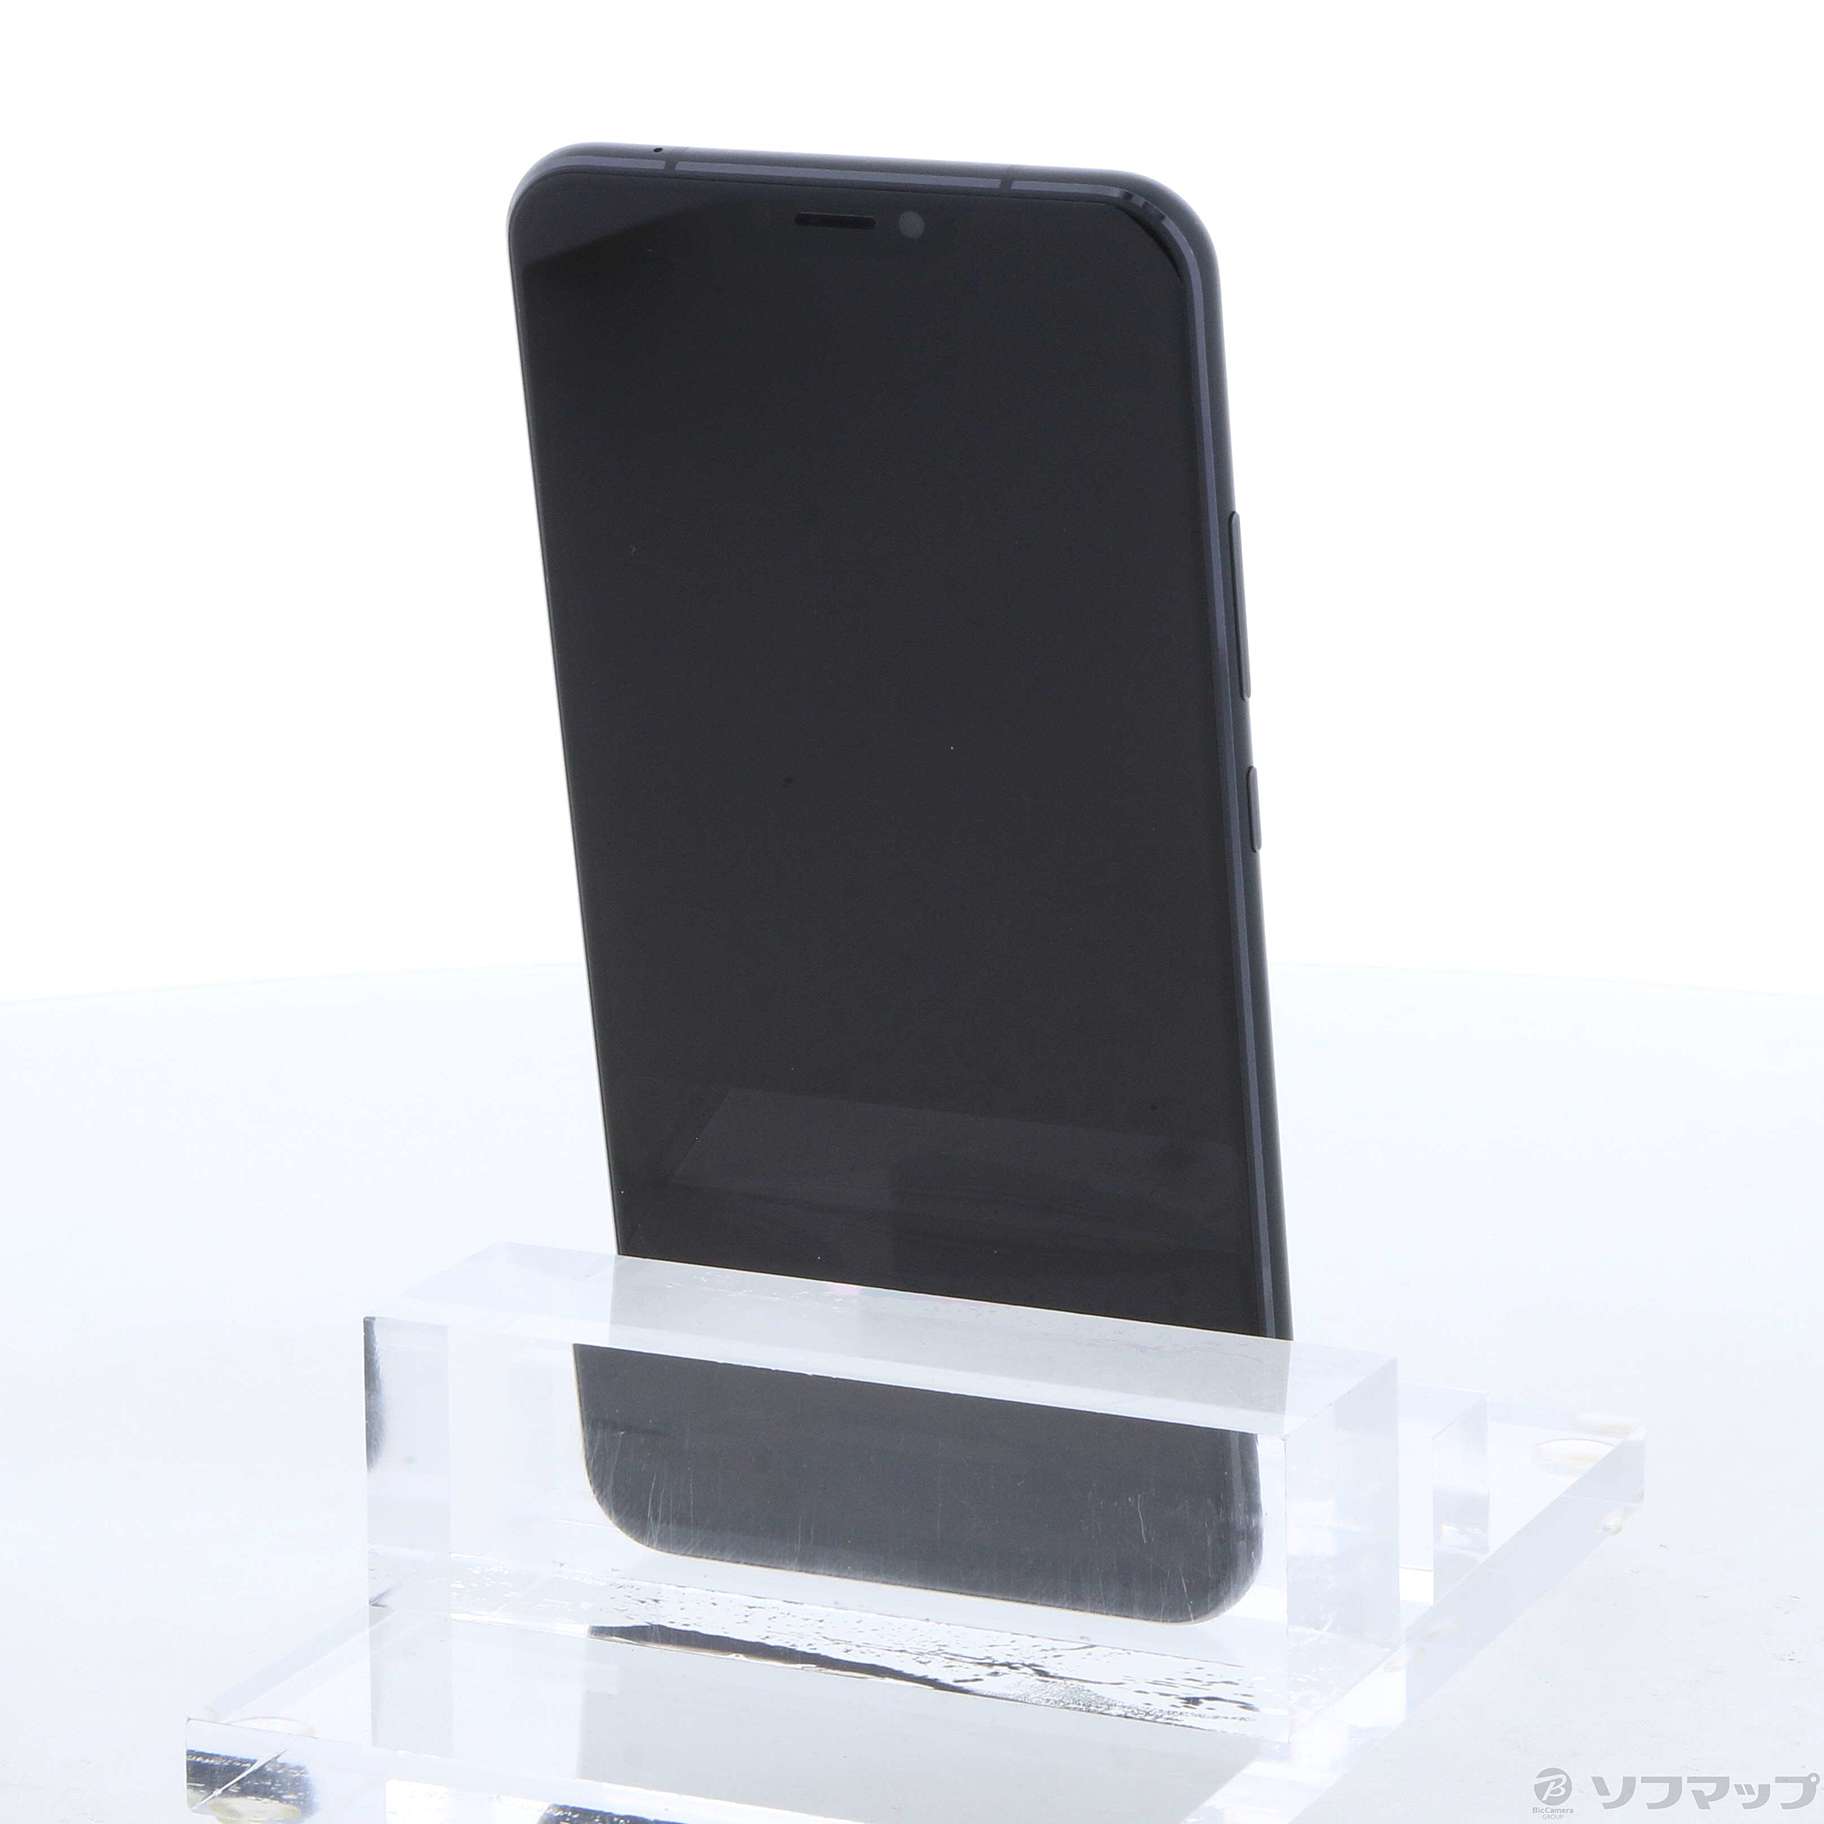 中古】ZenFone 5 64GB シャイニーブラック ZE620KL-BK64S6 SIMフリー ...